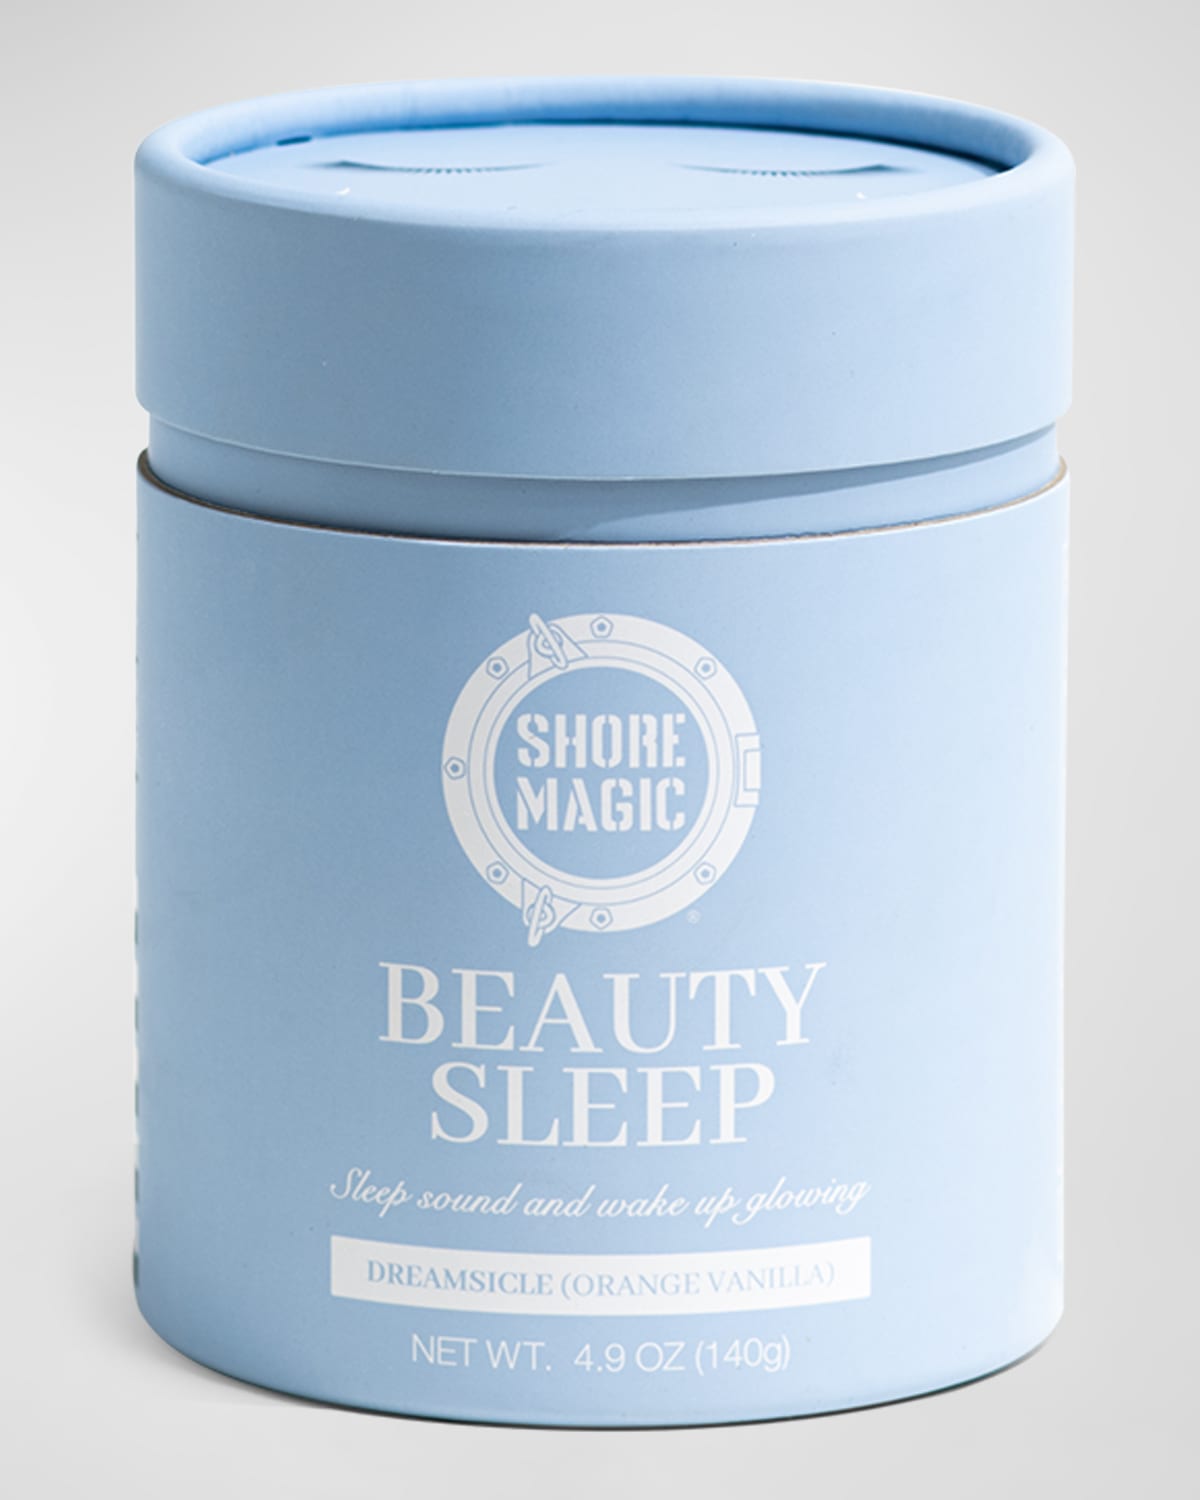 Beauty Sleep Supplement Powder with Collagen, 4.9 oz.